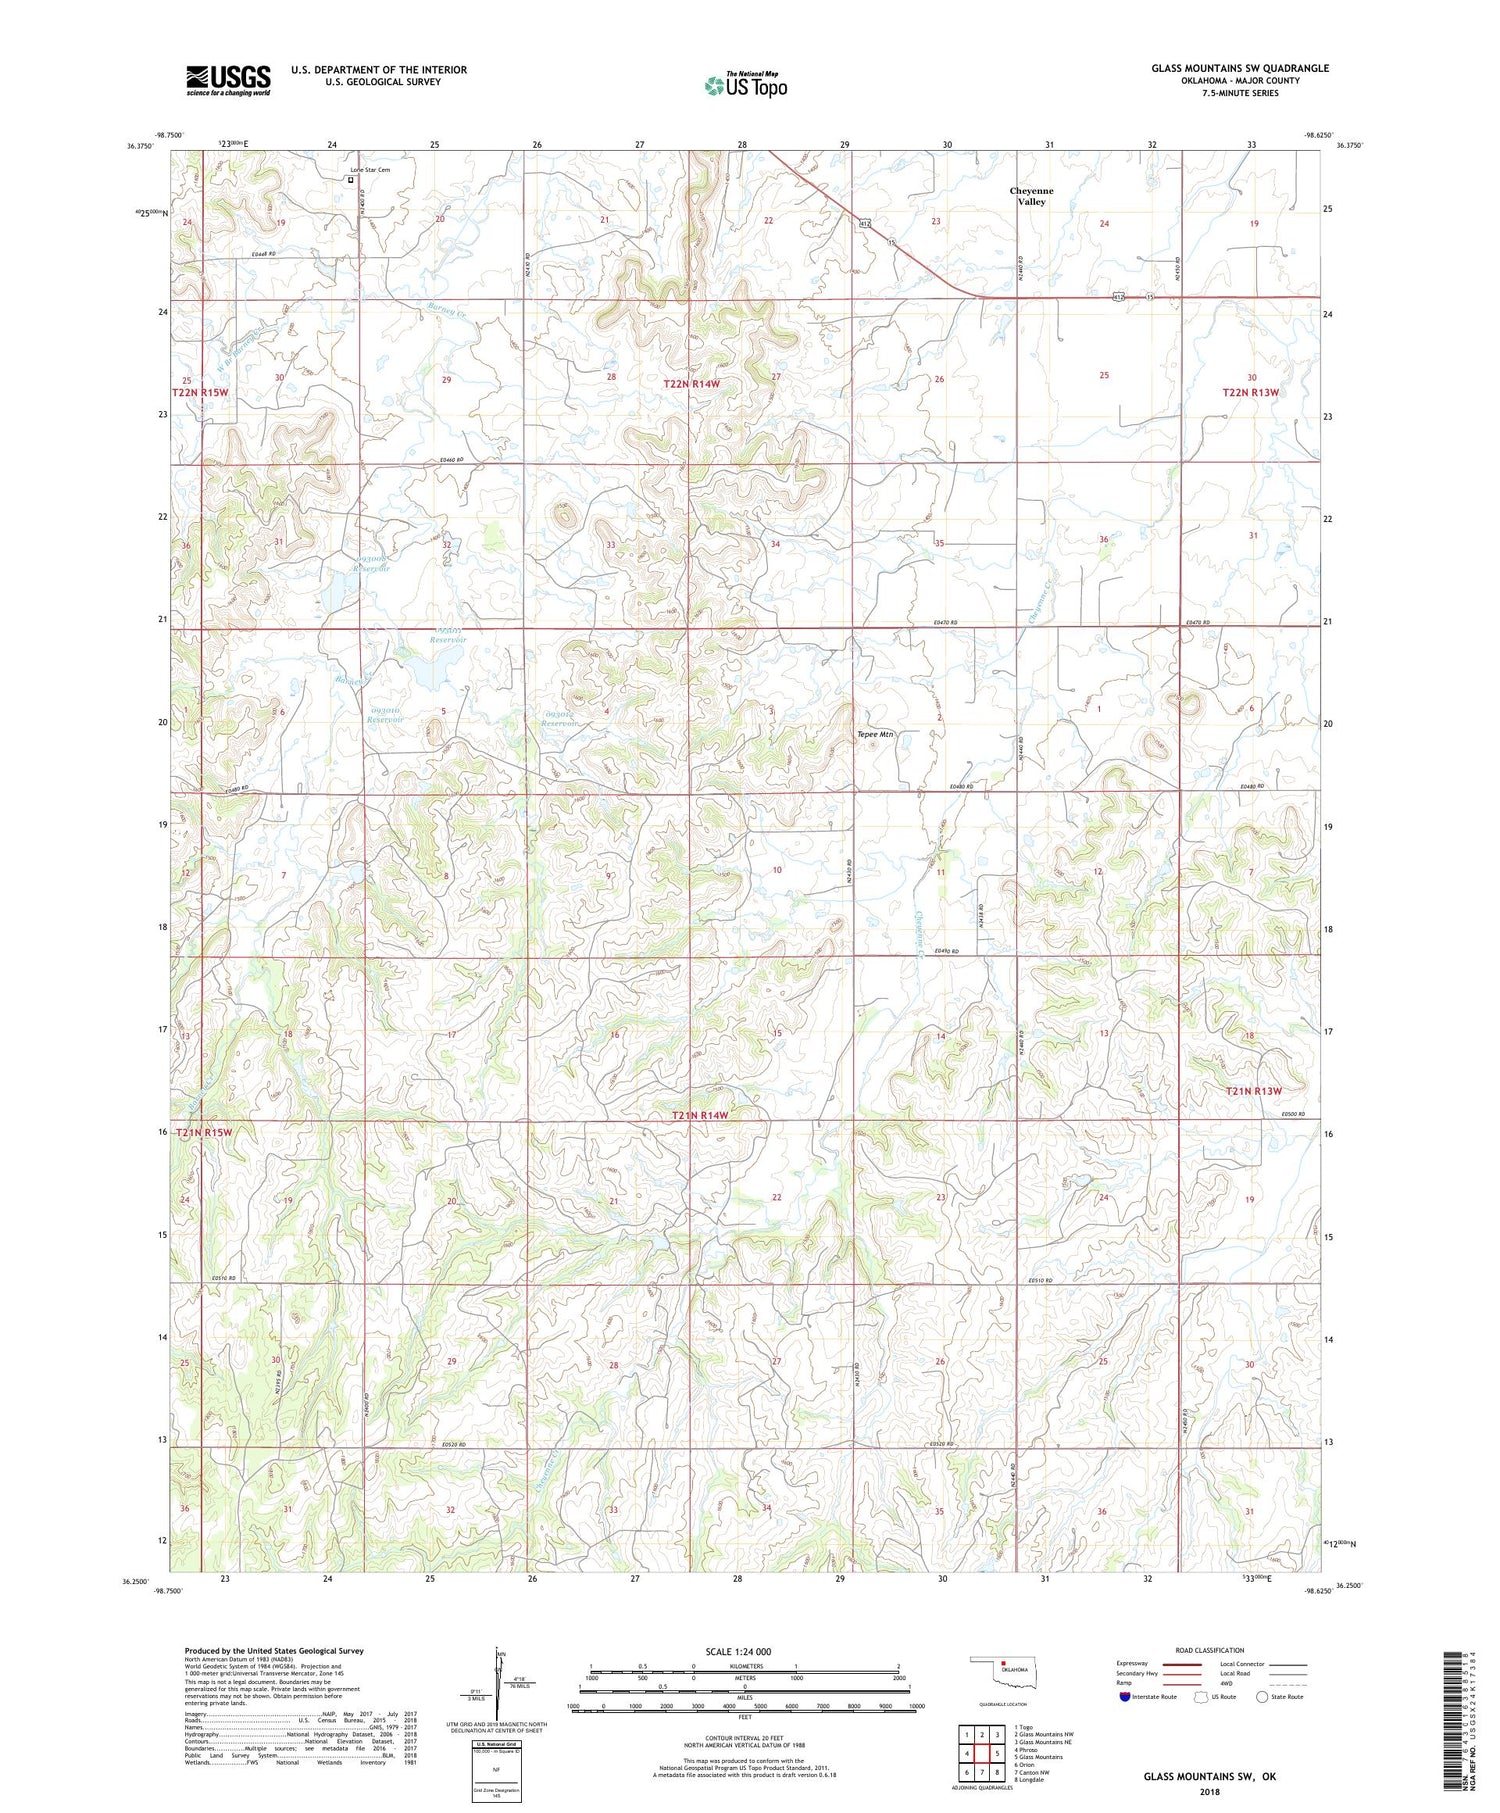 Glass Mountains SW Oklahoma US Topo Map Image